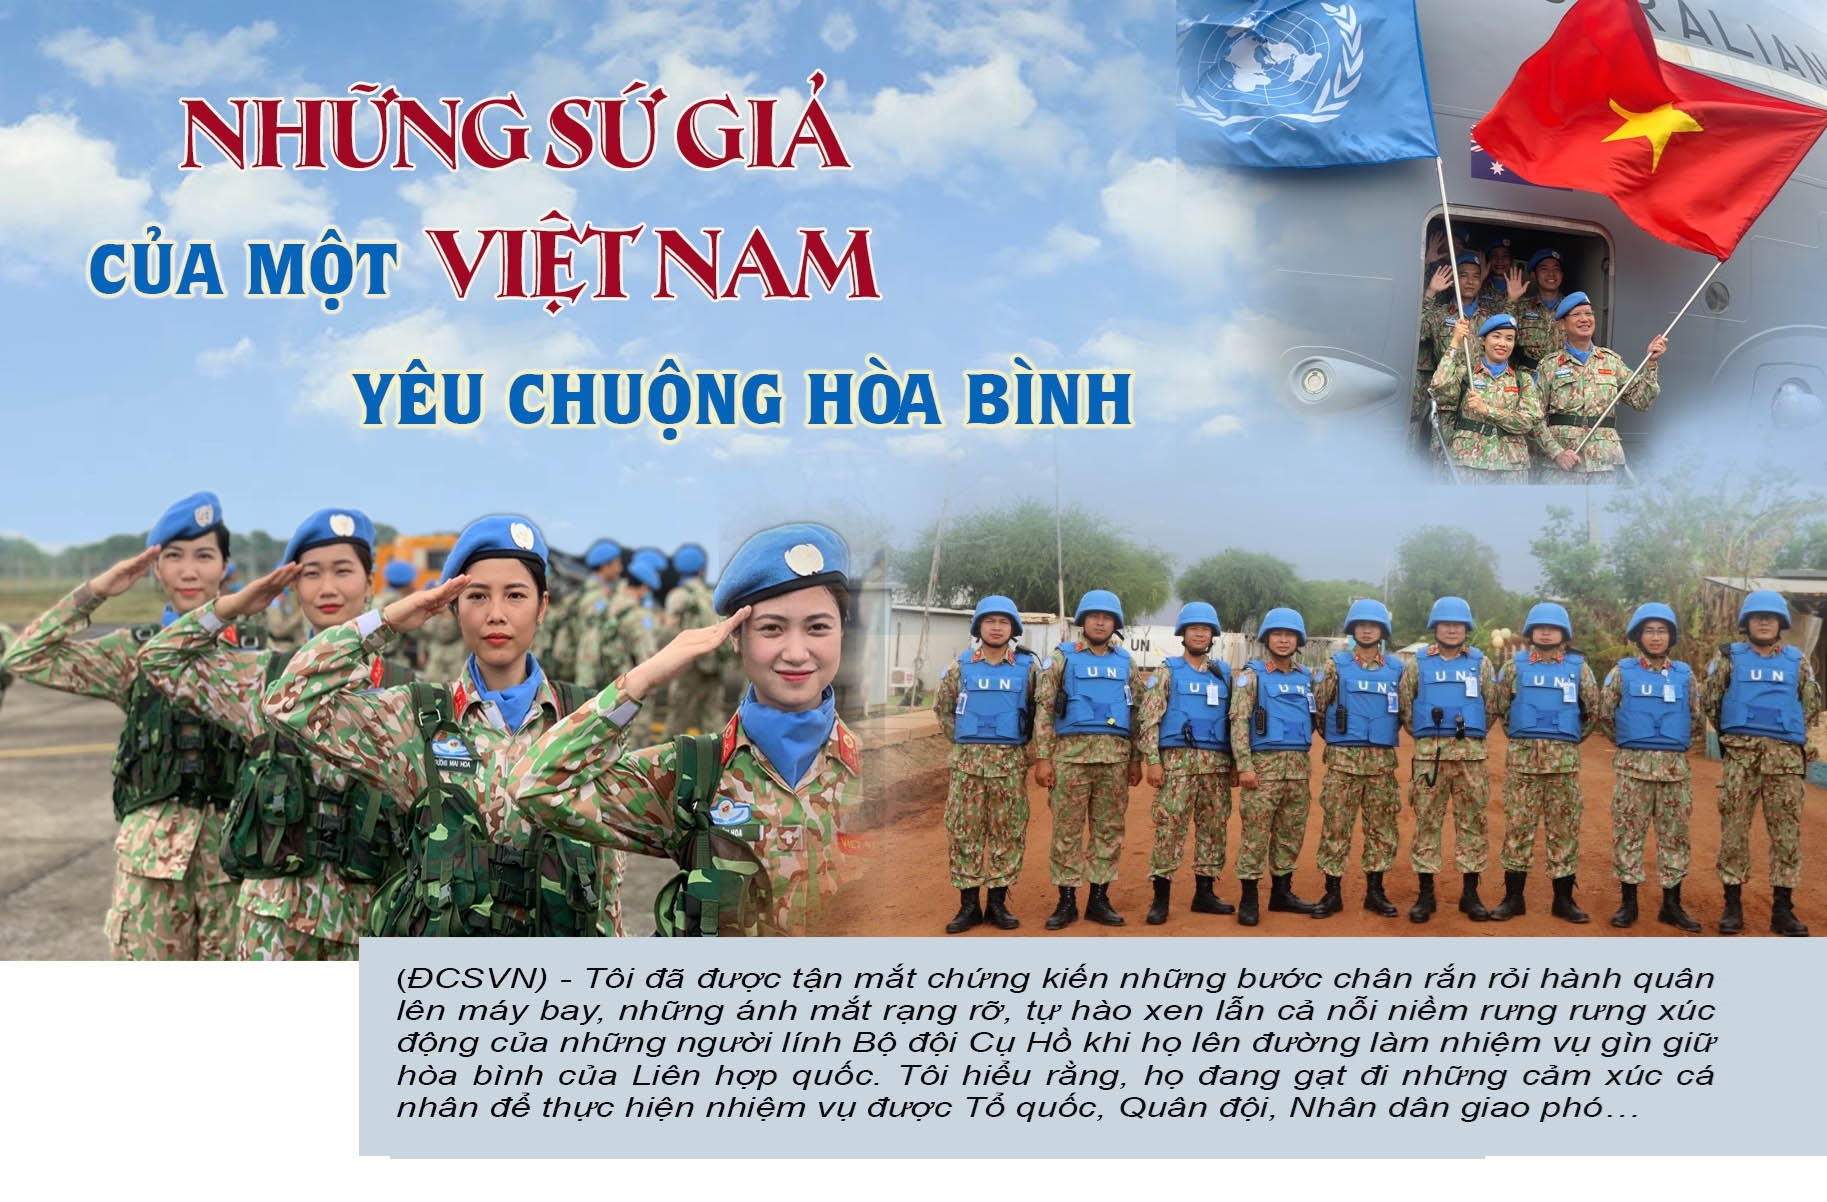 Khám phá những hình ảnh đầy sức mạnh và tinh thần đồng đội của Công binh Việt Nam trong nhiệm vụ quốc tế. Sự dũng cảm và sựnổ lực không ngừng nghỉ sẽ khiến bạn tôn vinh những người lính của đất nước và cảm nhận được ý nghĩa quan trọng của nhiệm vụ này.